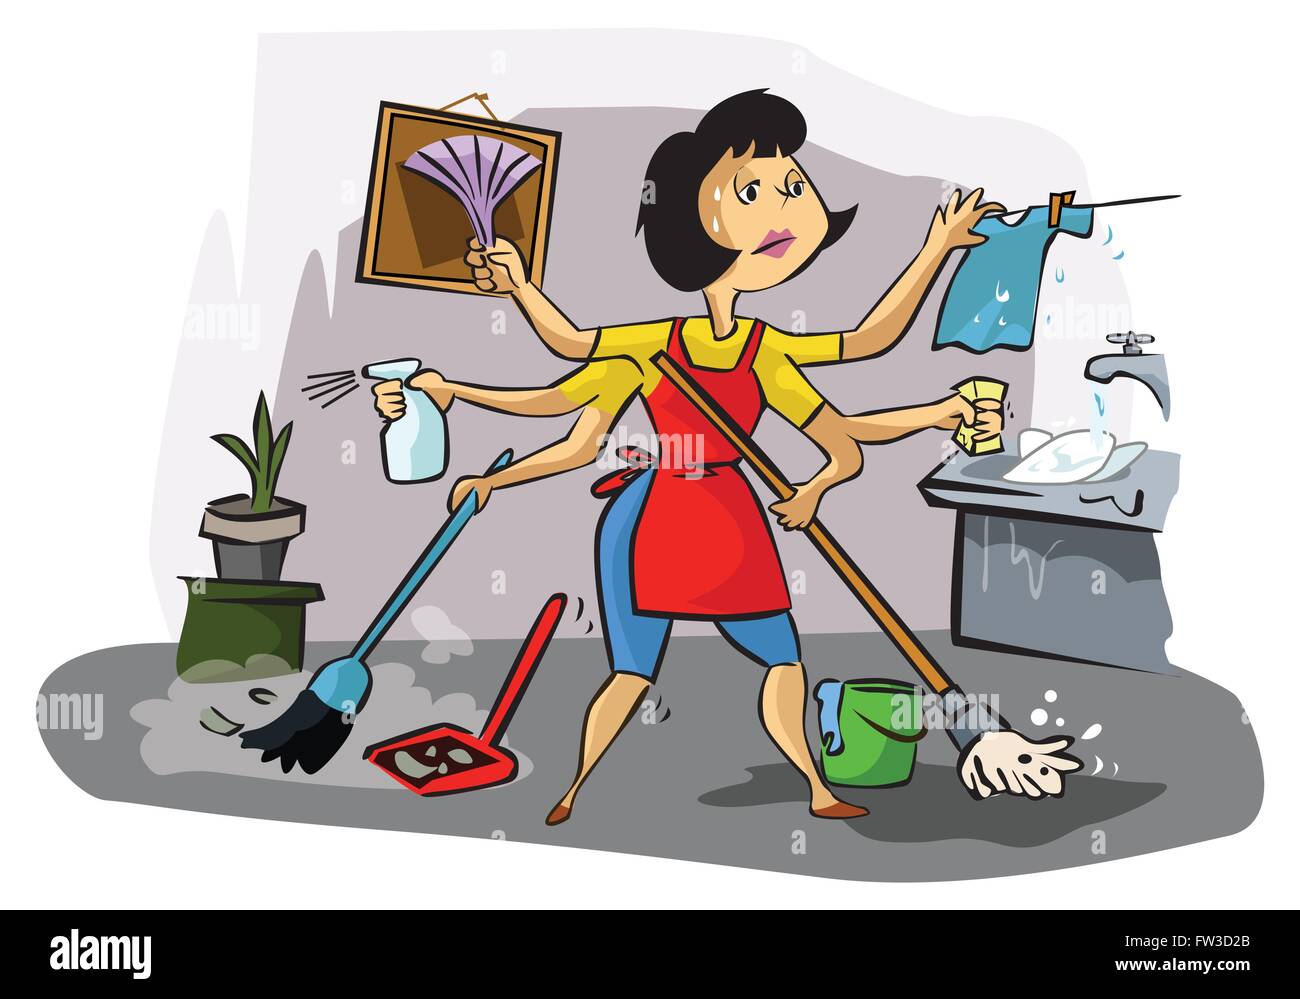 В воскресенье можно убираться в квартире. Стирка уборка готовка. Домохозяйка иллюстрация. Женщина уборка. Женщина вся в домашних делах.